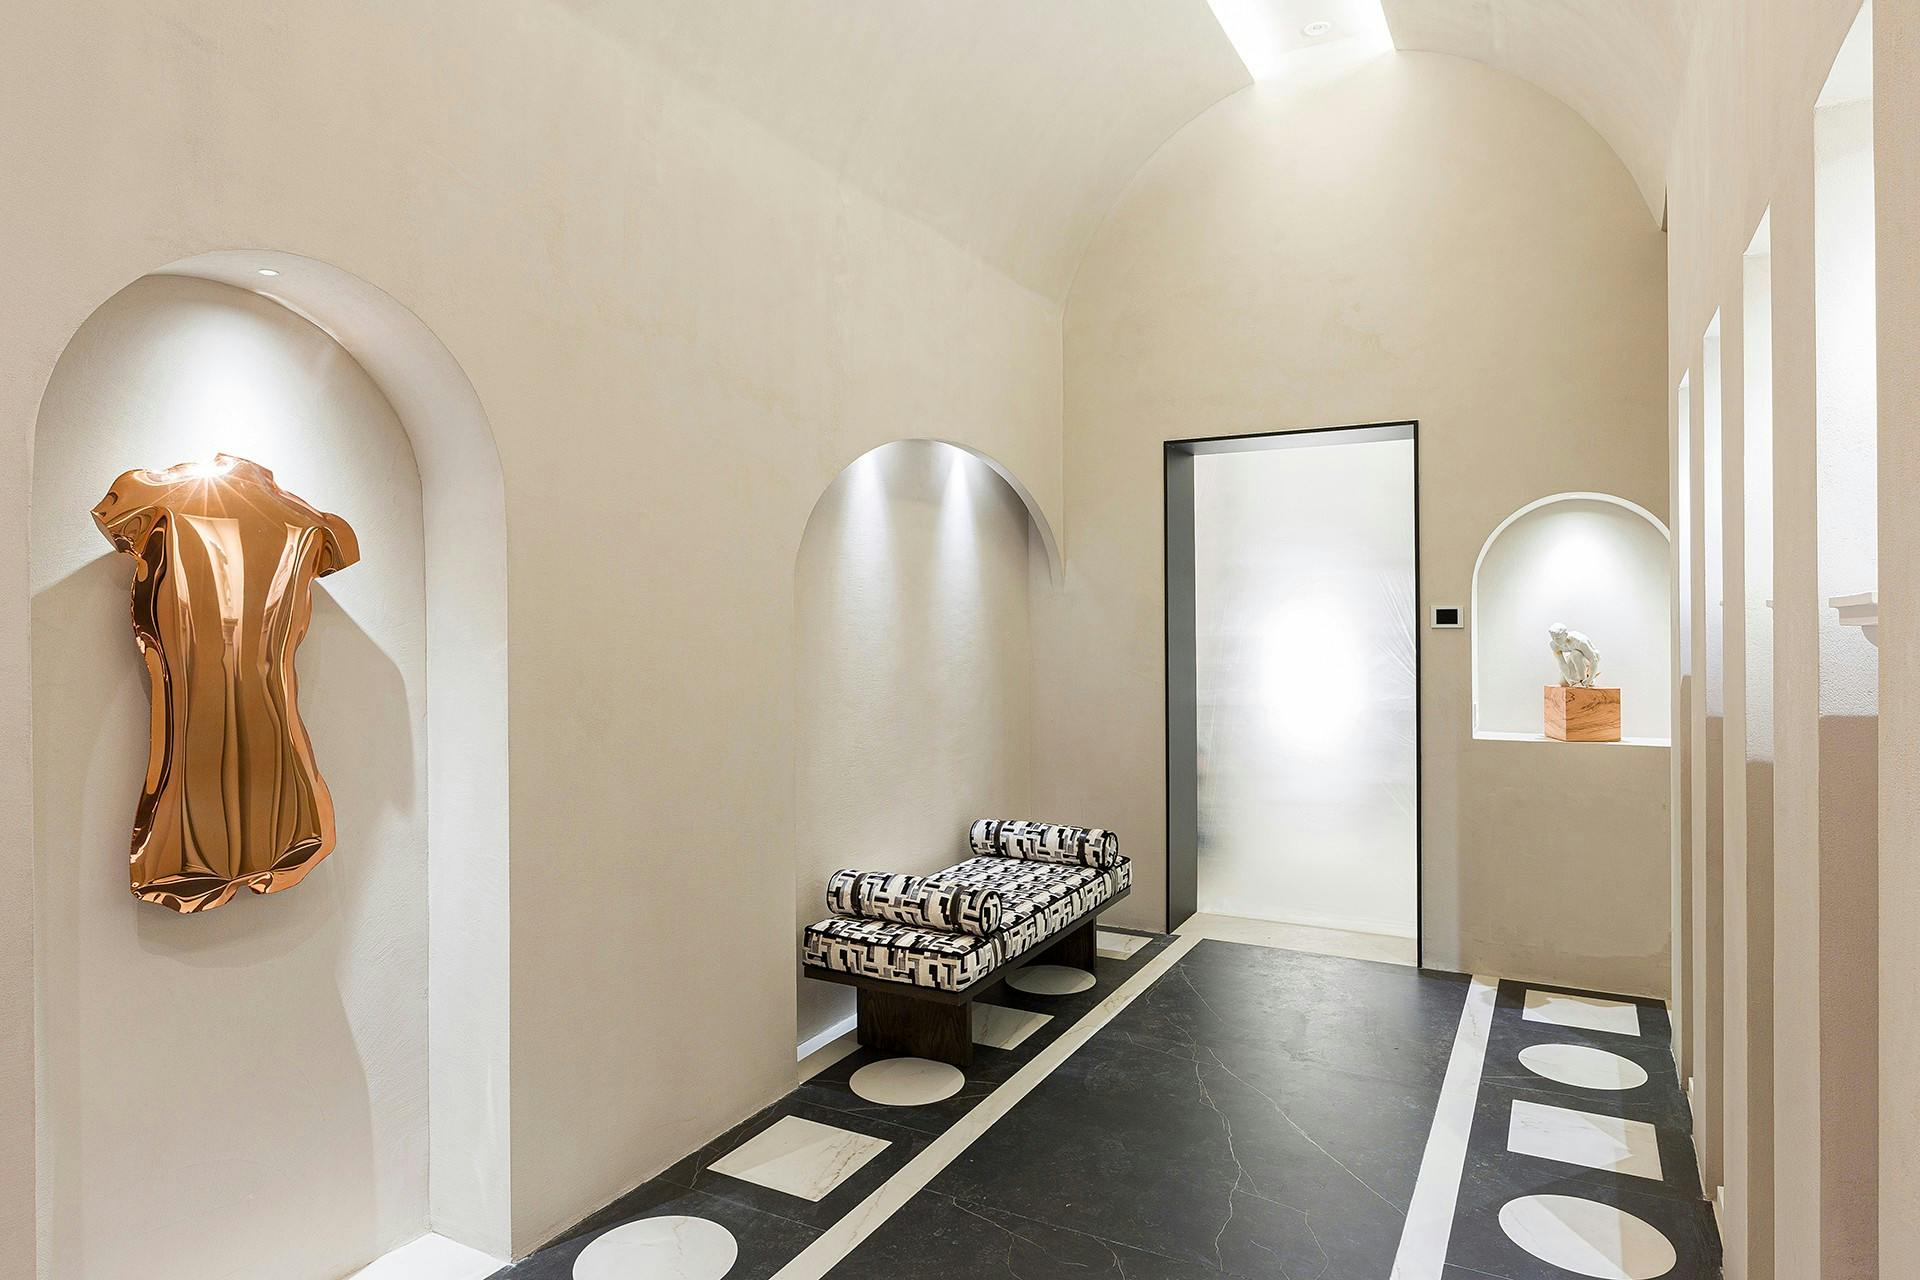 Bildnummer 33 des aktuellen Abschnitts von A contemporary public toilet design inspired by Roman public baths von Cosentino Deutschland